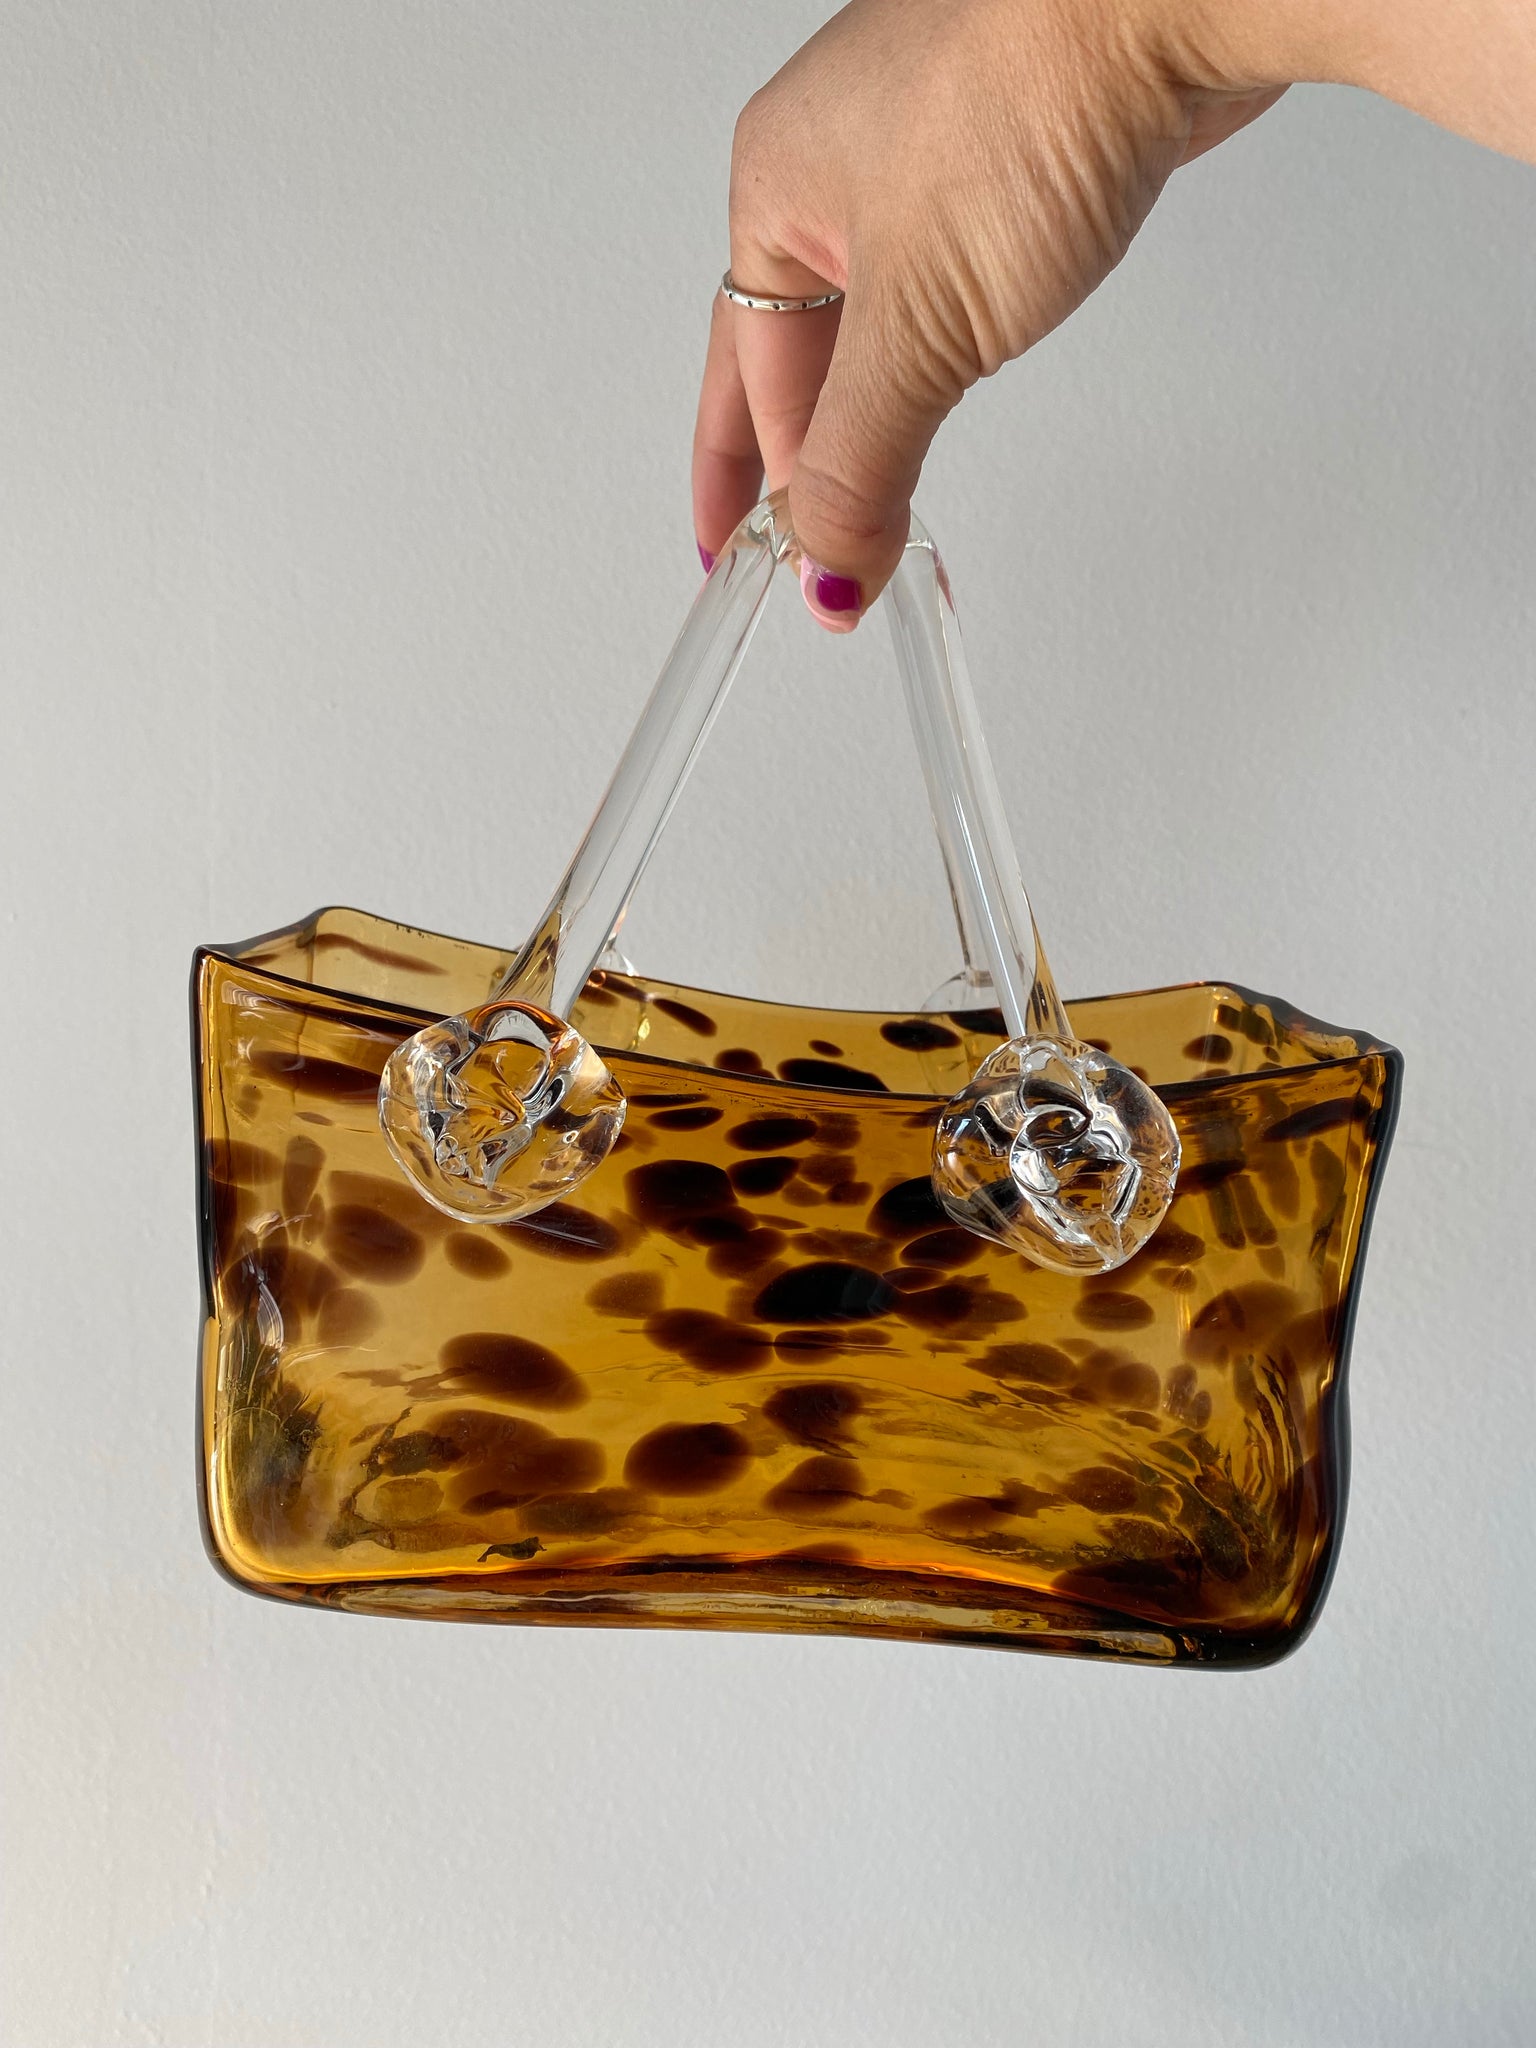 Tortoiseshell glass purse vase